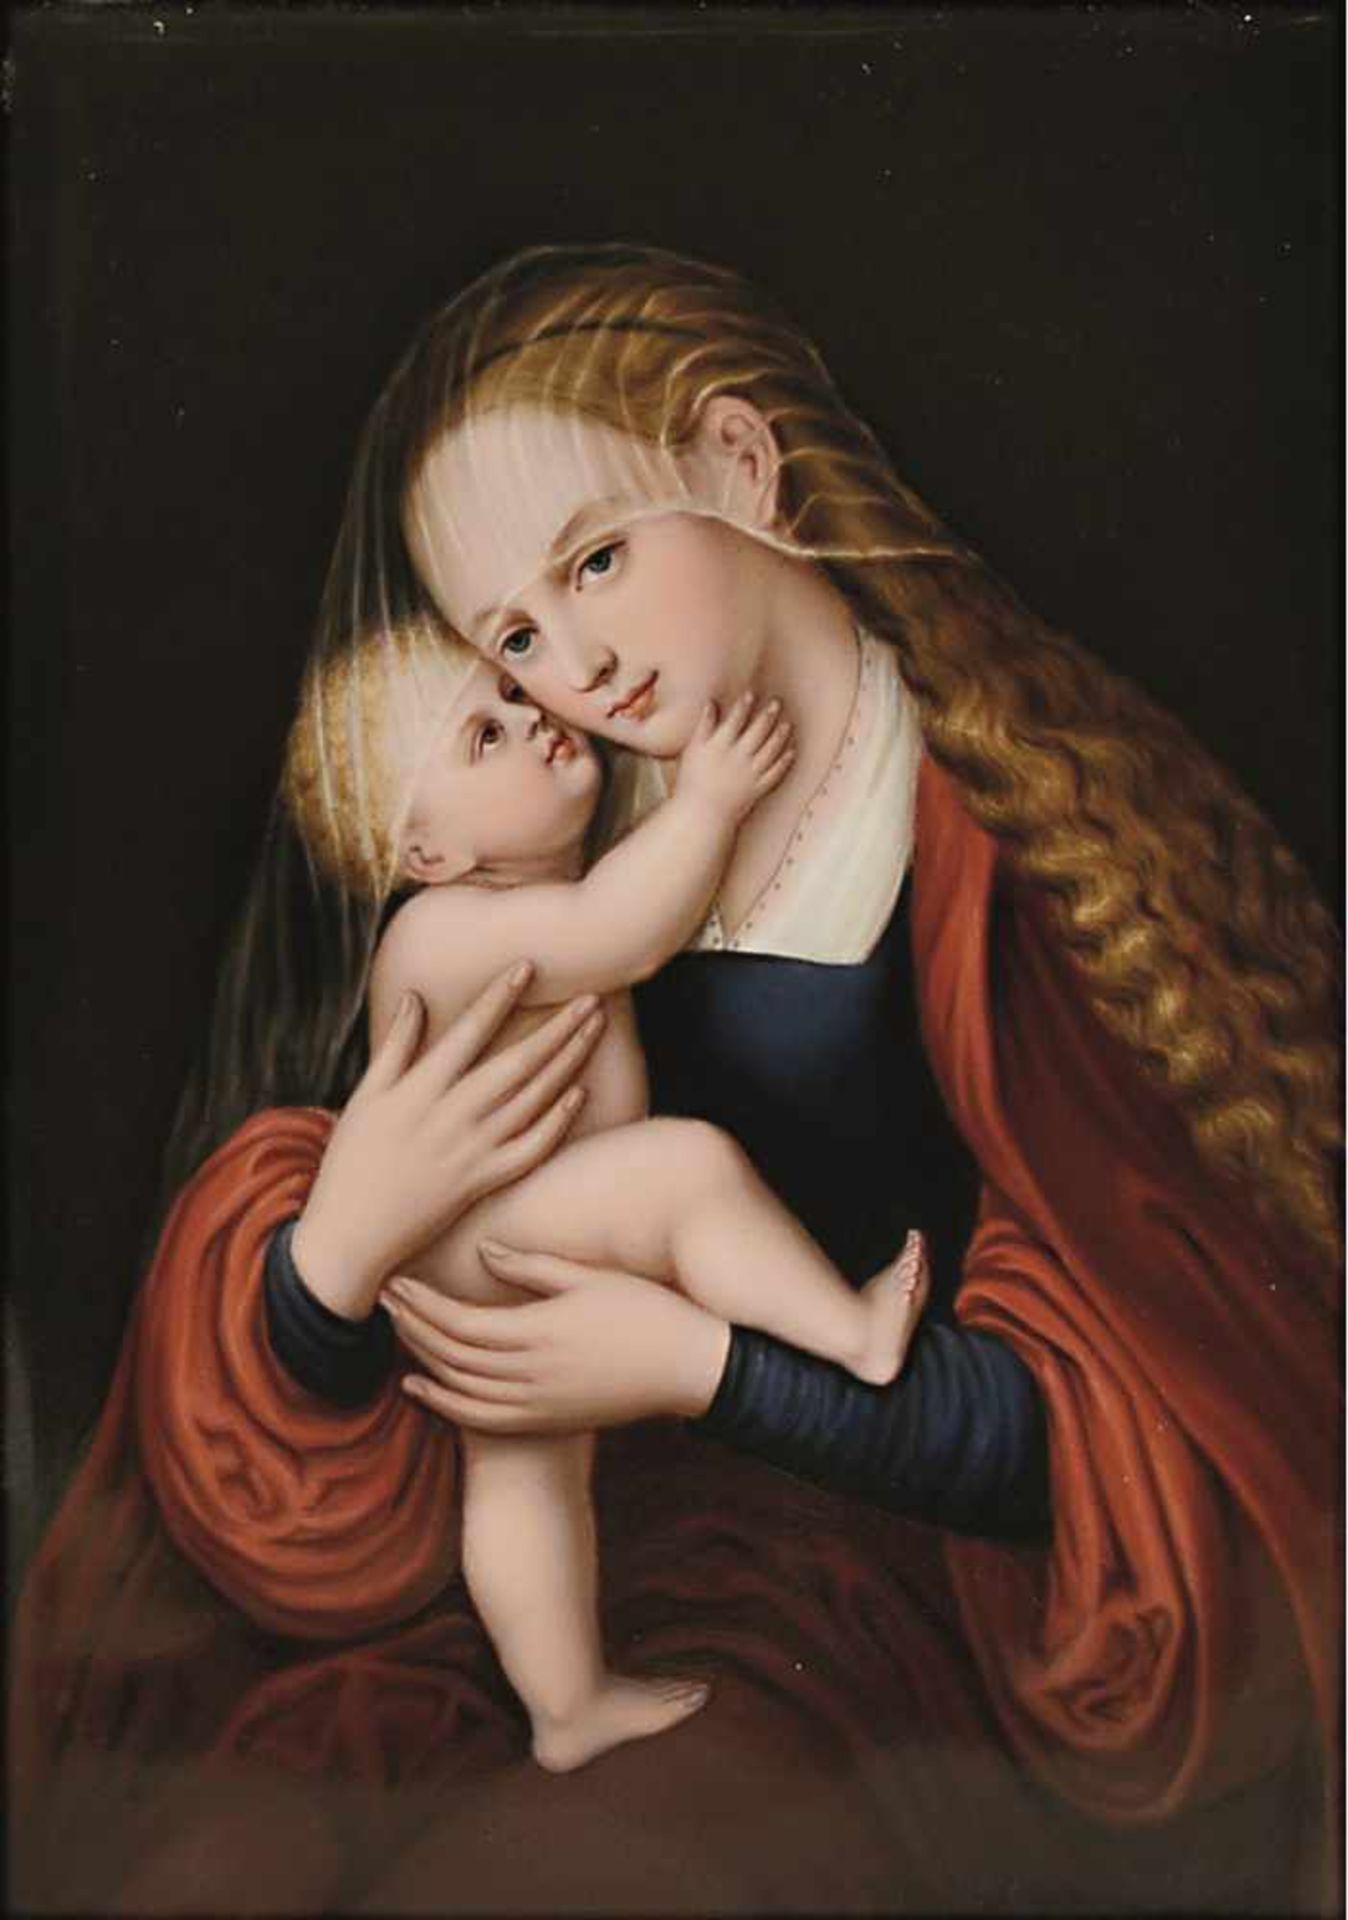 Porzellanbild: Maria Hilf 19. Jh. Nach dem Gemälde von Lucas Cranach in Innsbruck. Pressnummer "E